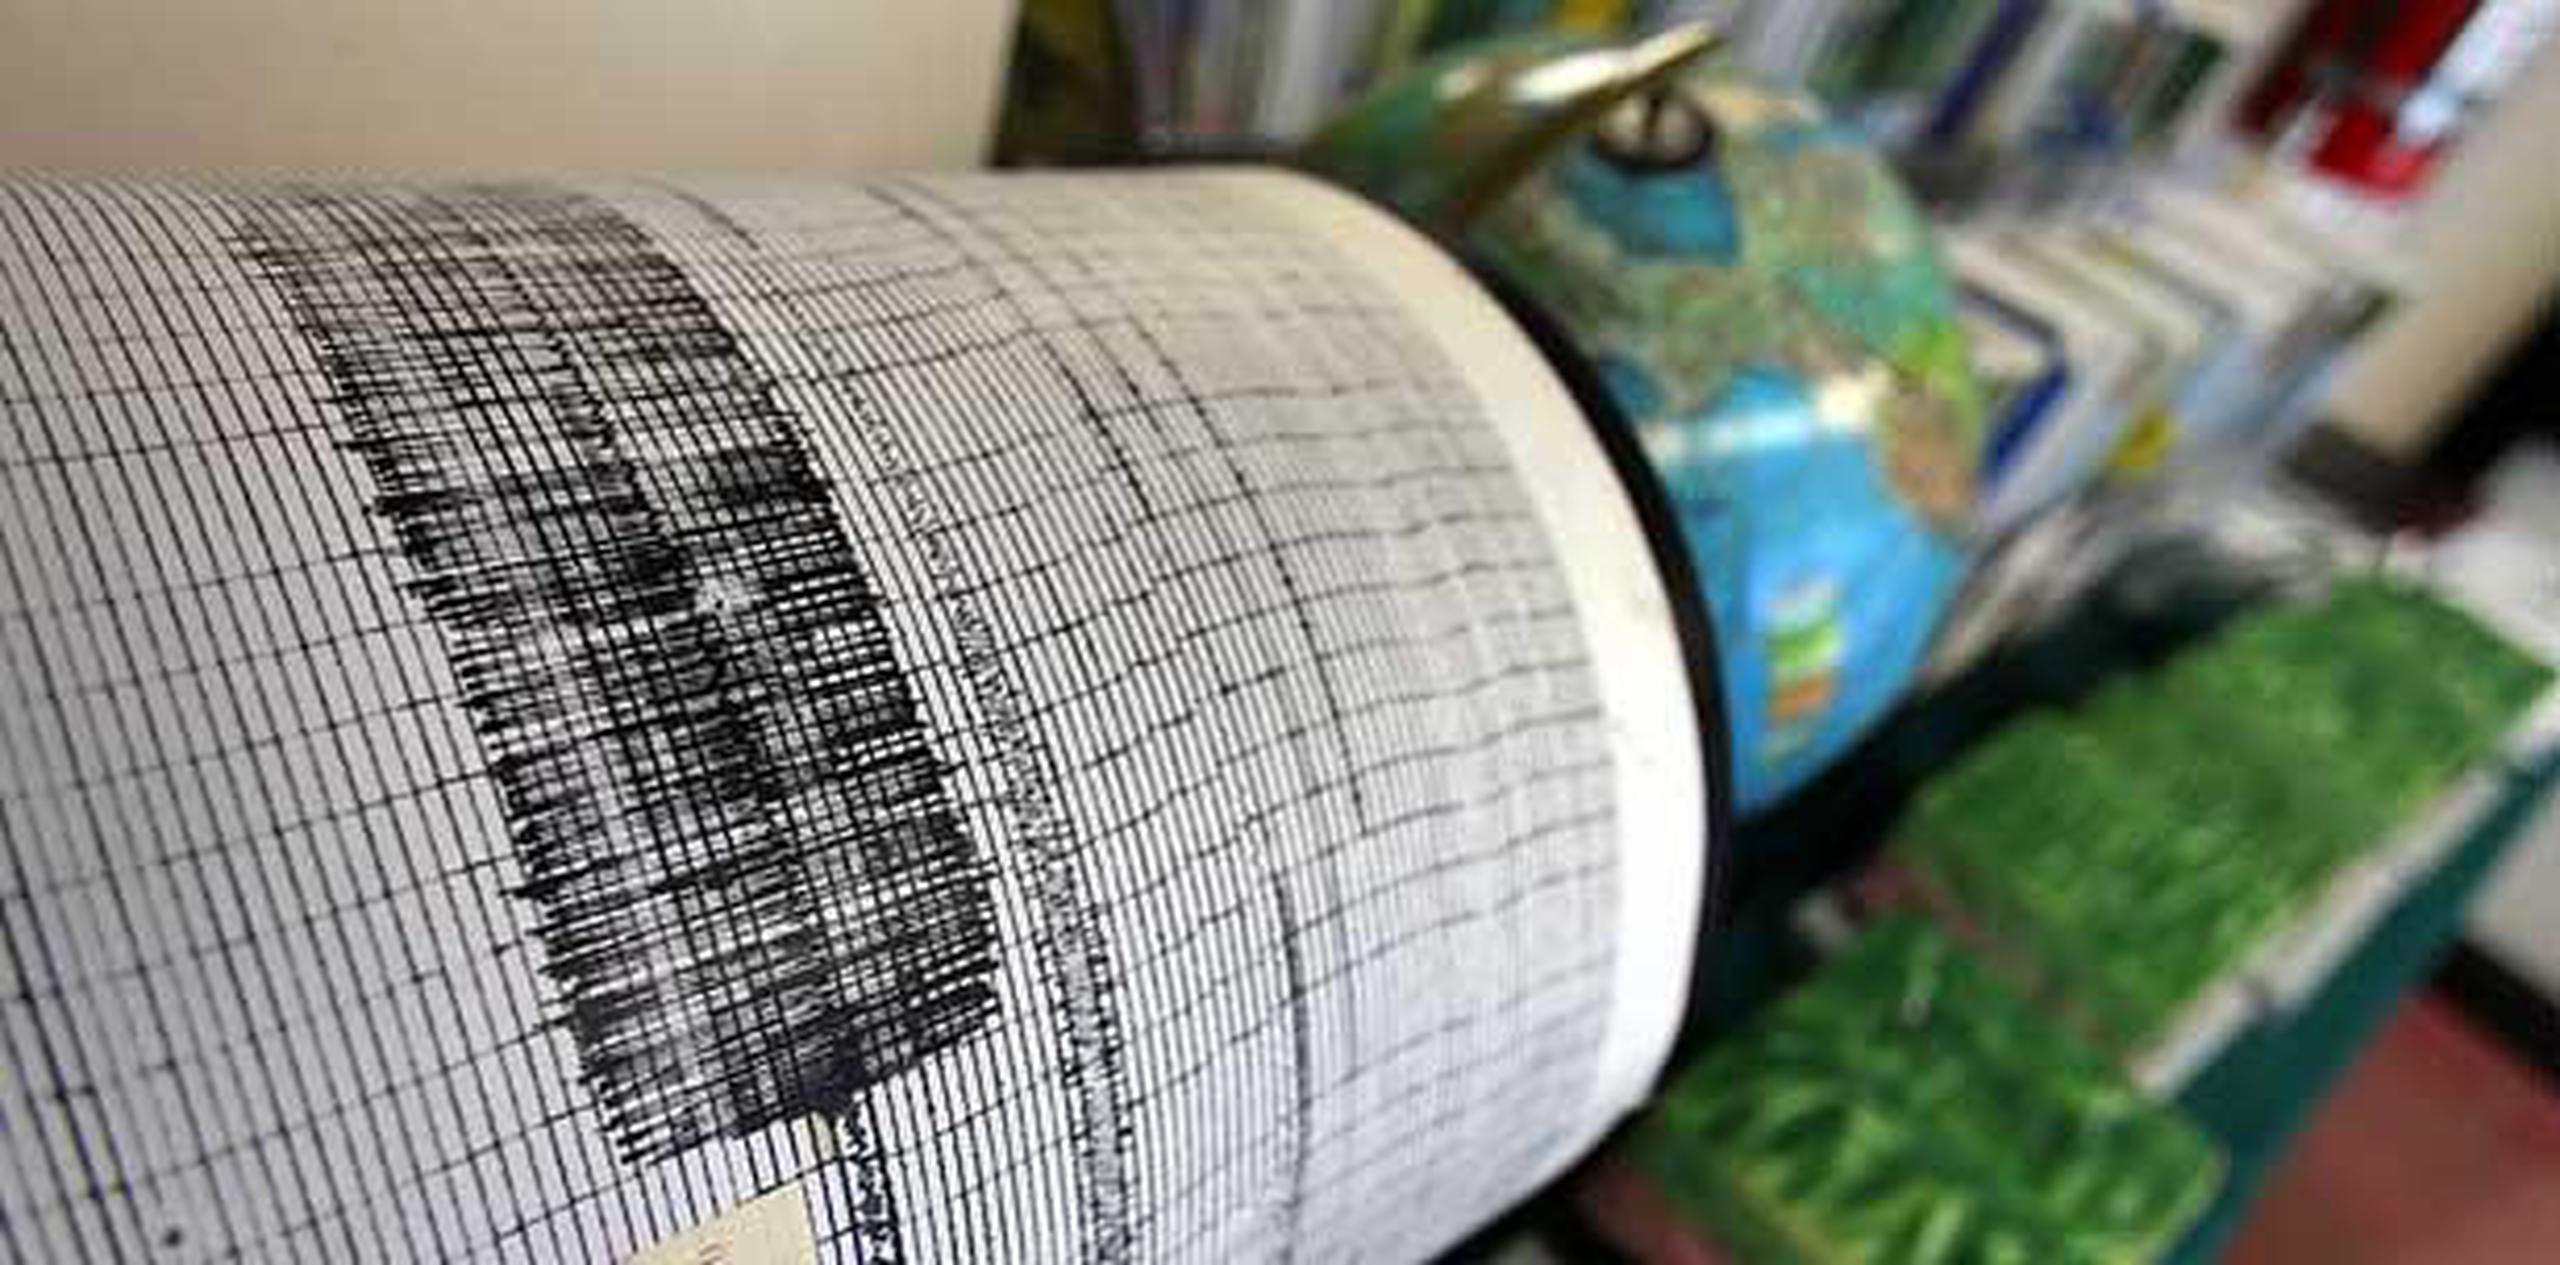 El temblor ocurrió a las 8.55 a.m., a una profundidad de 110 kilómetros, y su epicentro se ubicó a 19 kilómetros al oeste de la ciudad de Juanjui. (Archivo)